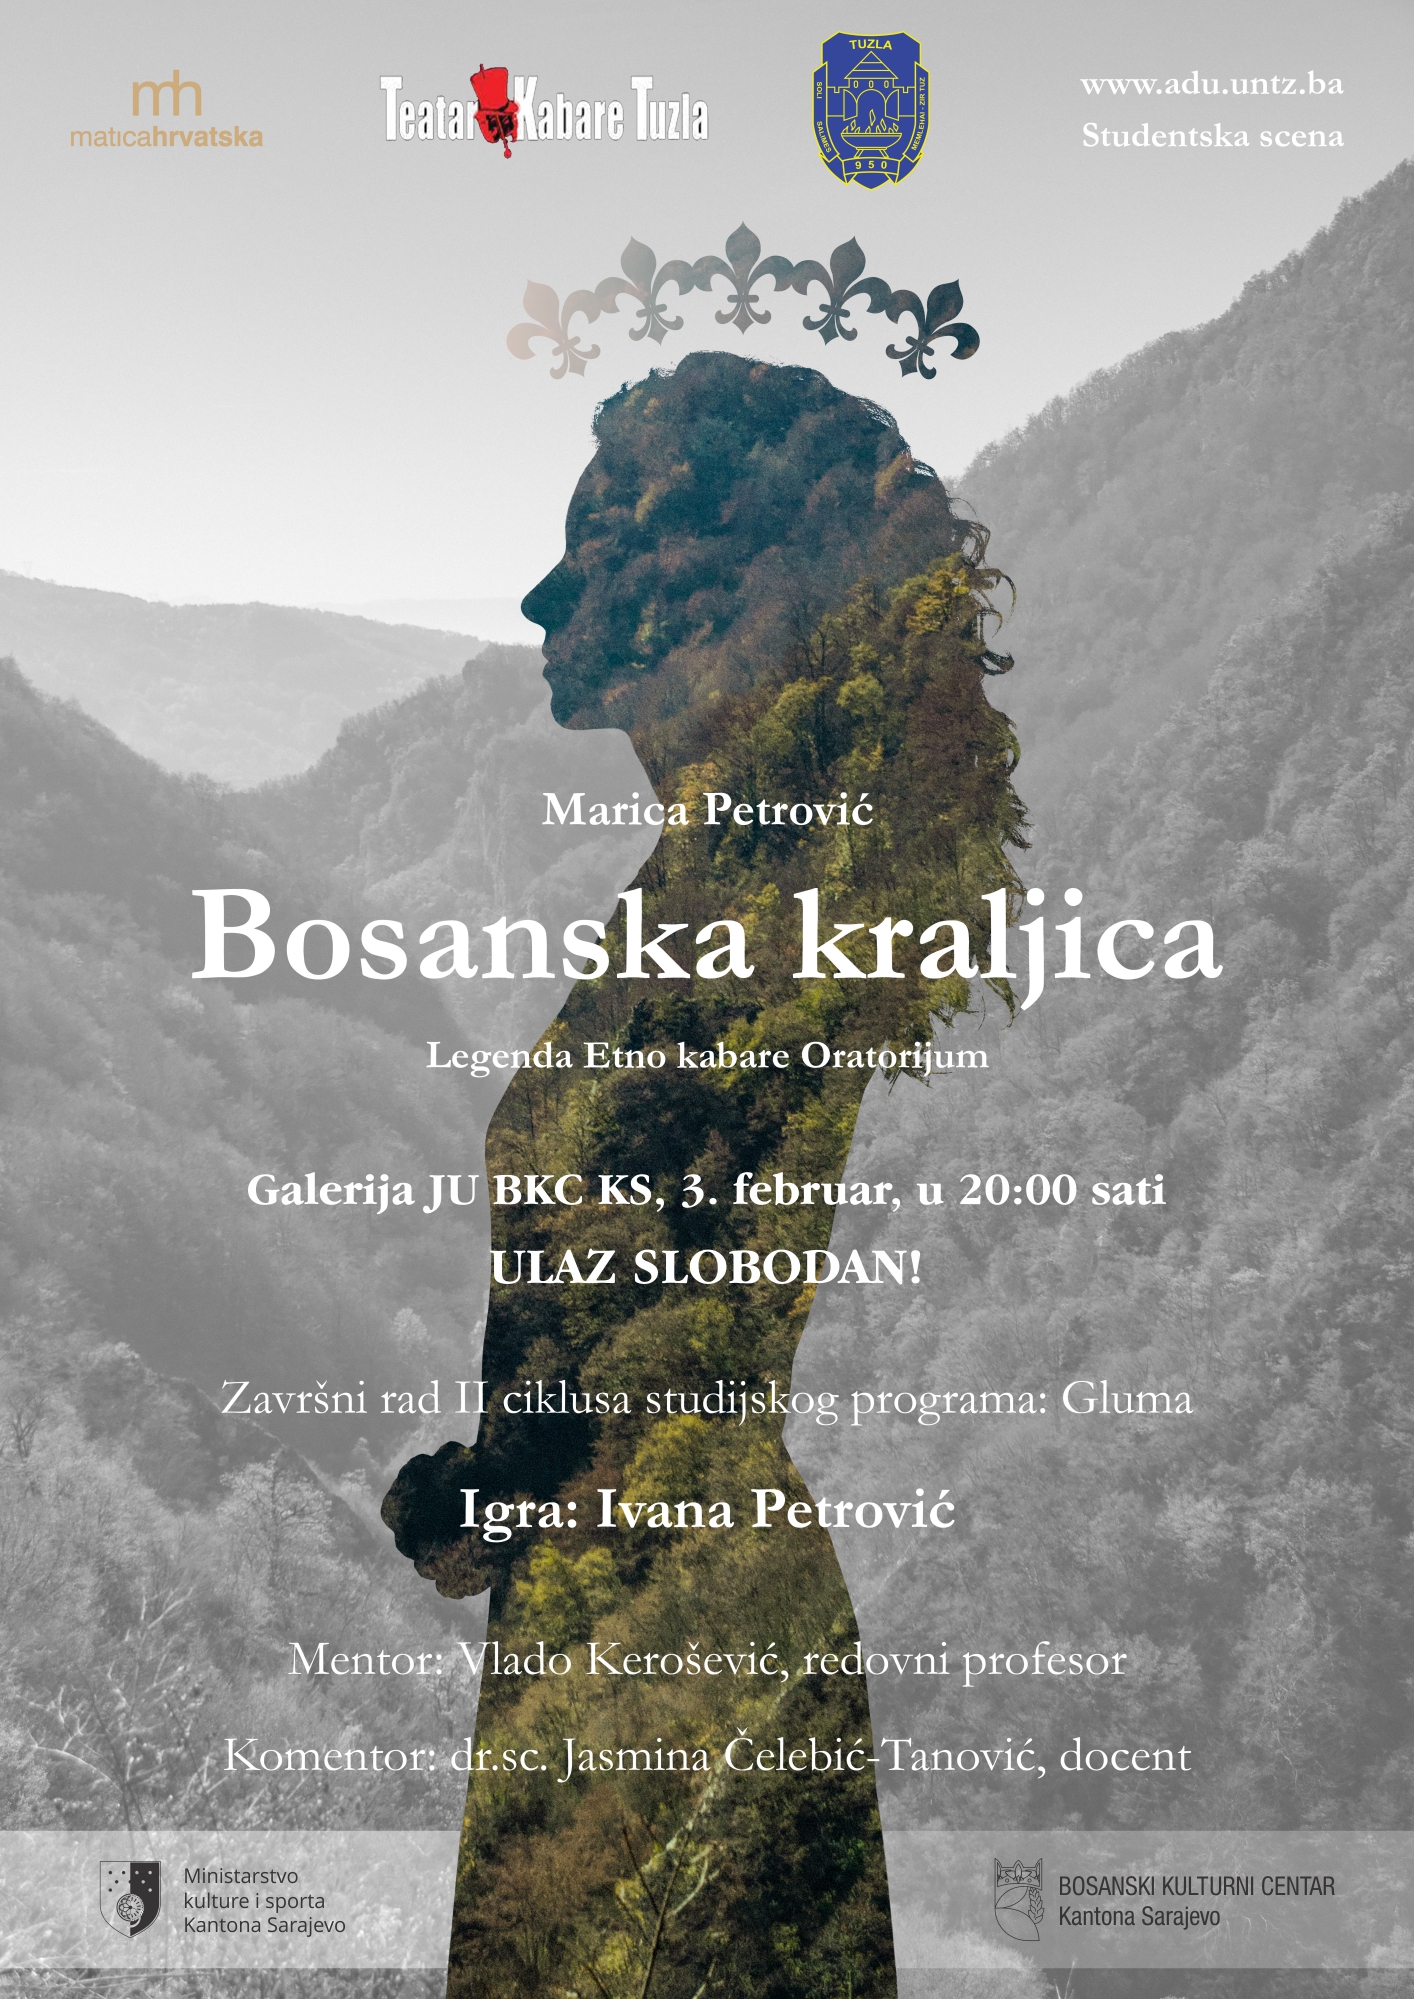 Monodrama ”Bosanska kraljica” u izvođenju Ivane Petrović 3. februara u BKC-u